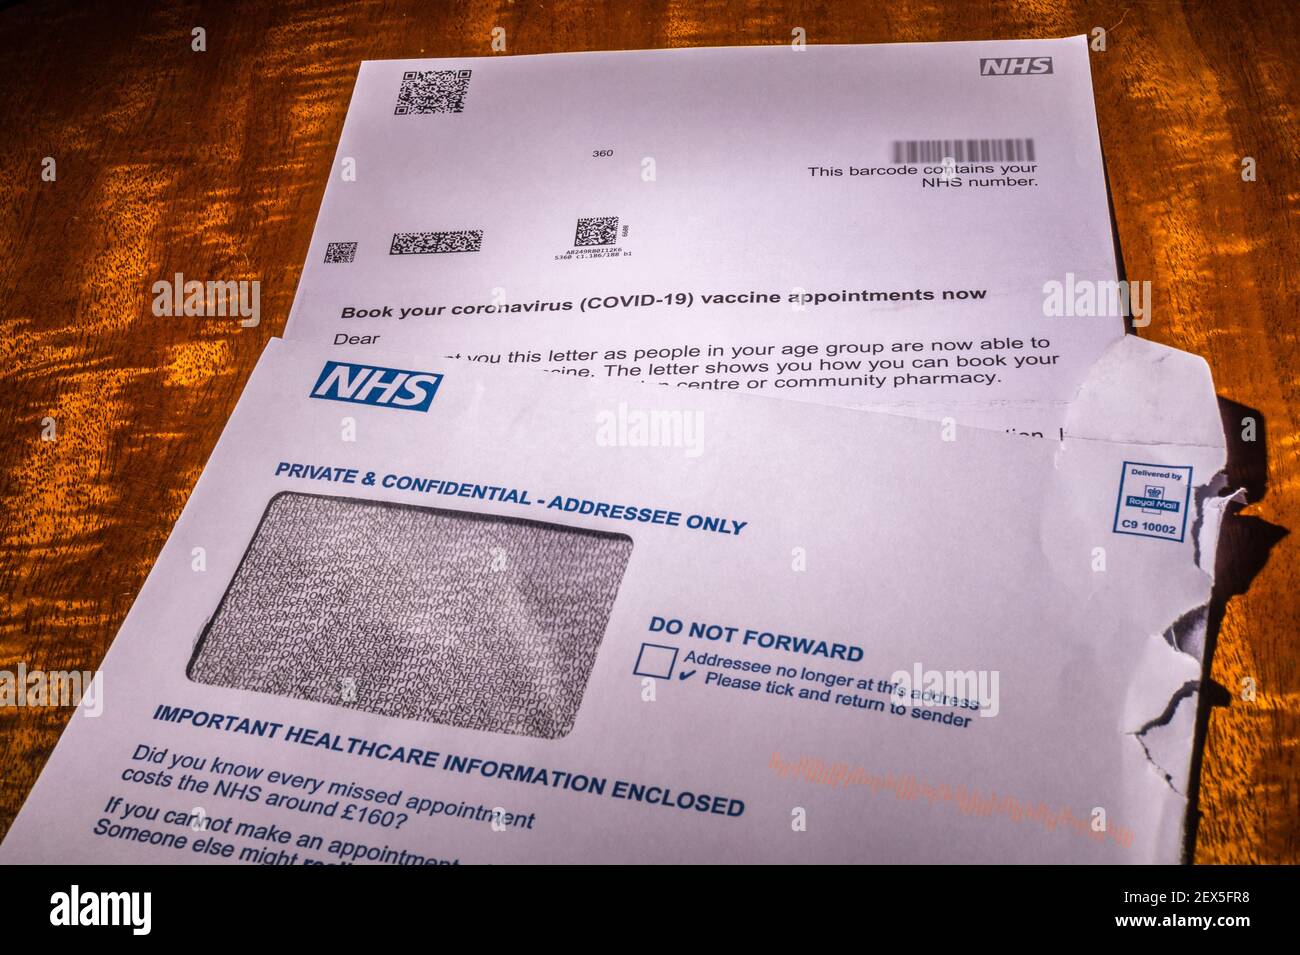 Lettre d'invitation du NHS pour réserver une vaccination contre le coronavirus pour une personne de plus de 60 ans avec une notice d'orientation. Retouché pour supprimer les informations personnelles. Banque D'Images